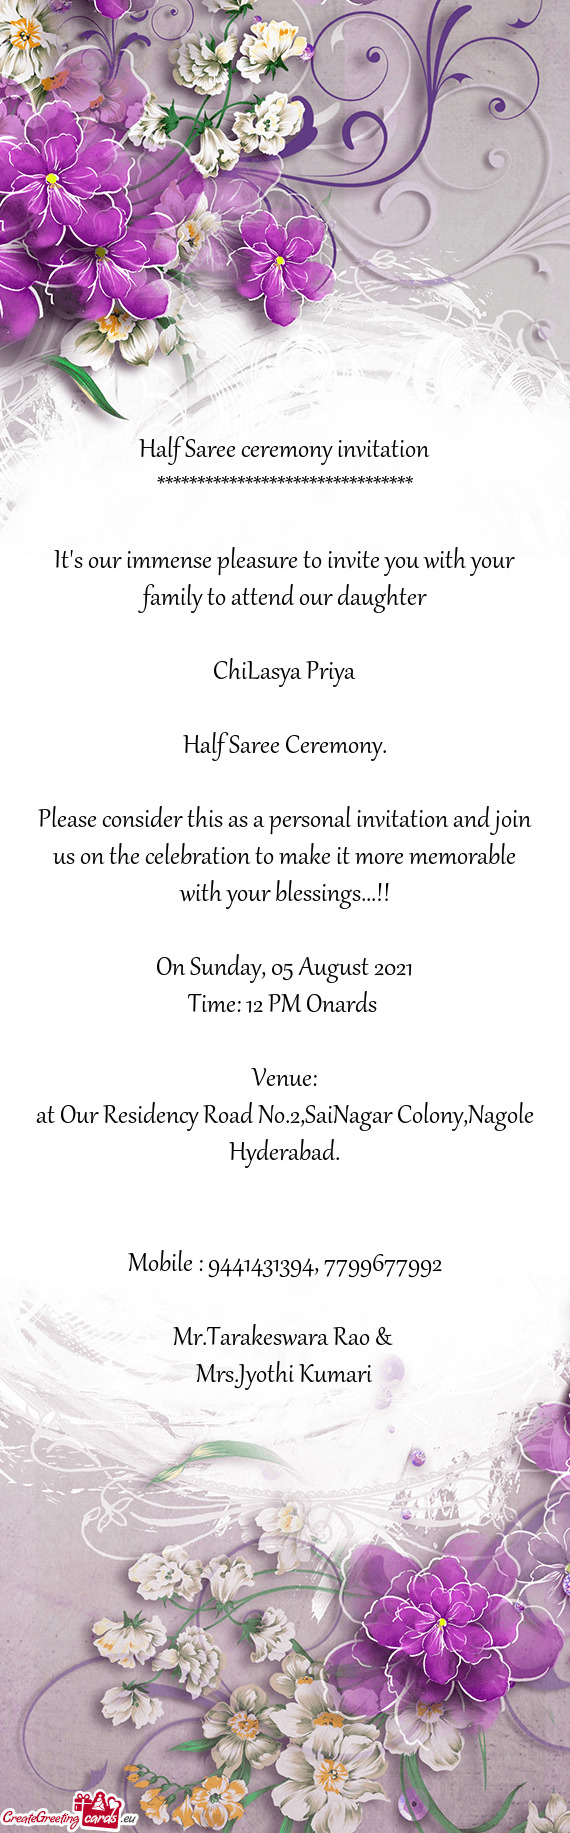 ChiLasya Priya